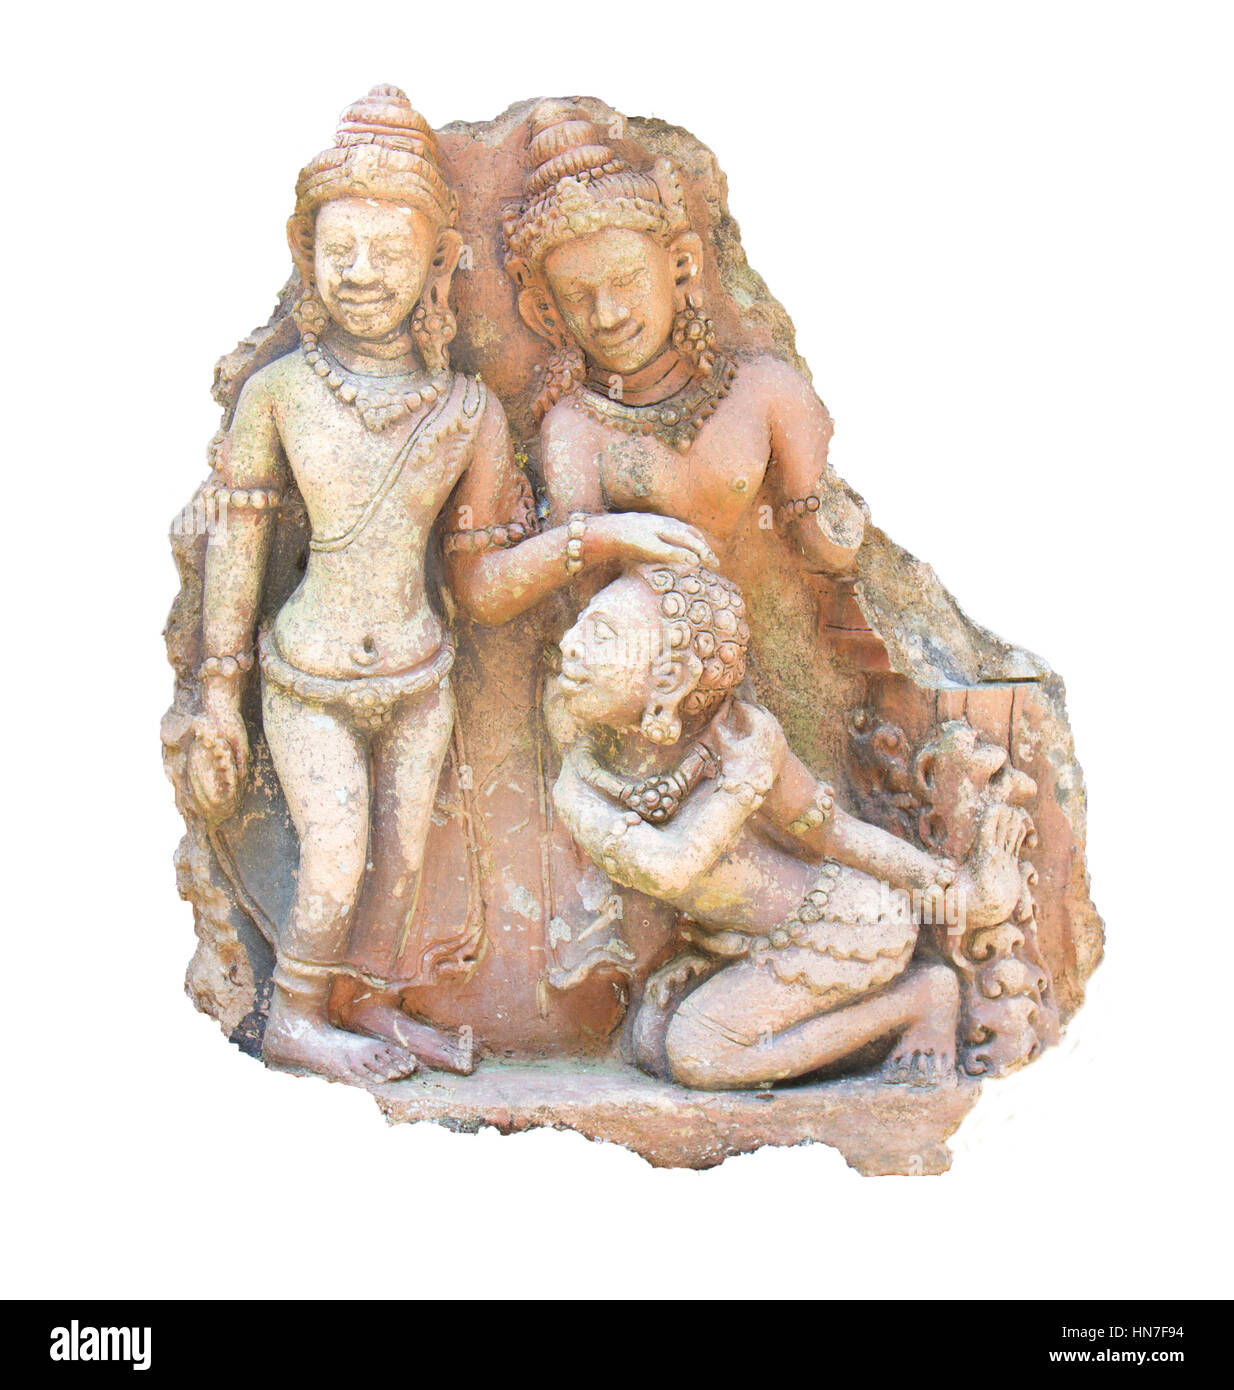 Sculpté sur pierre. L'art et les croyances religieuses. isolé sur fond blanc. Banque D'Images